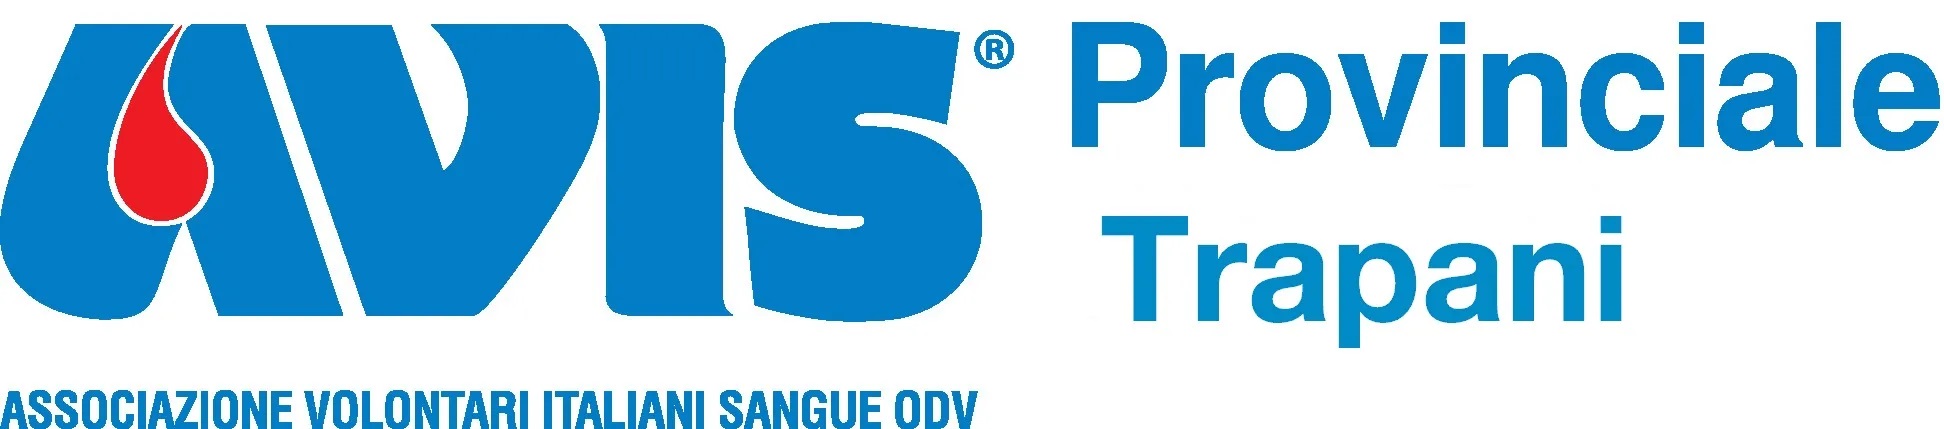 AVIS PROVINCIALE TRAPANI ODV logo